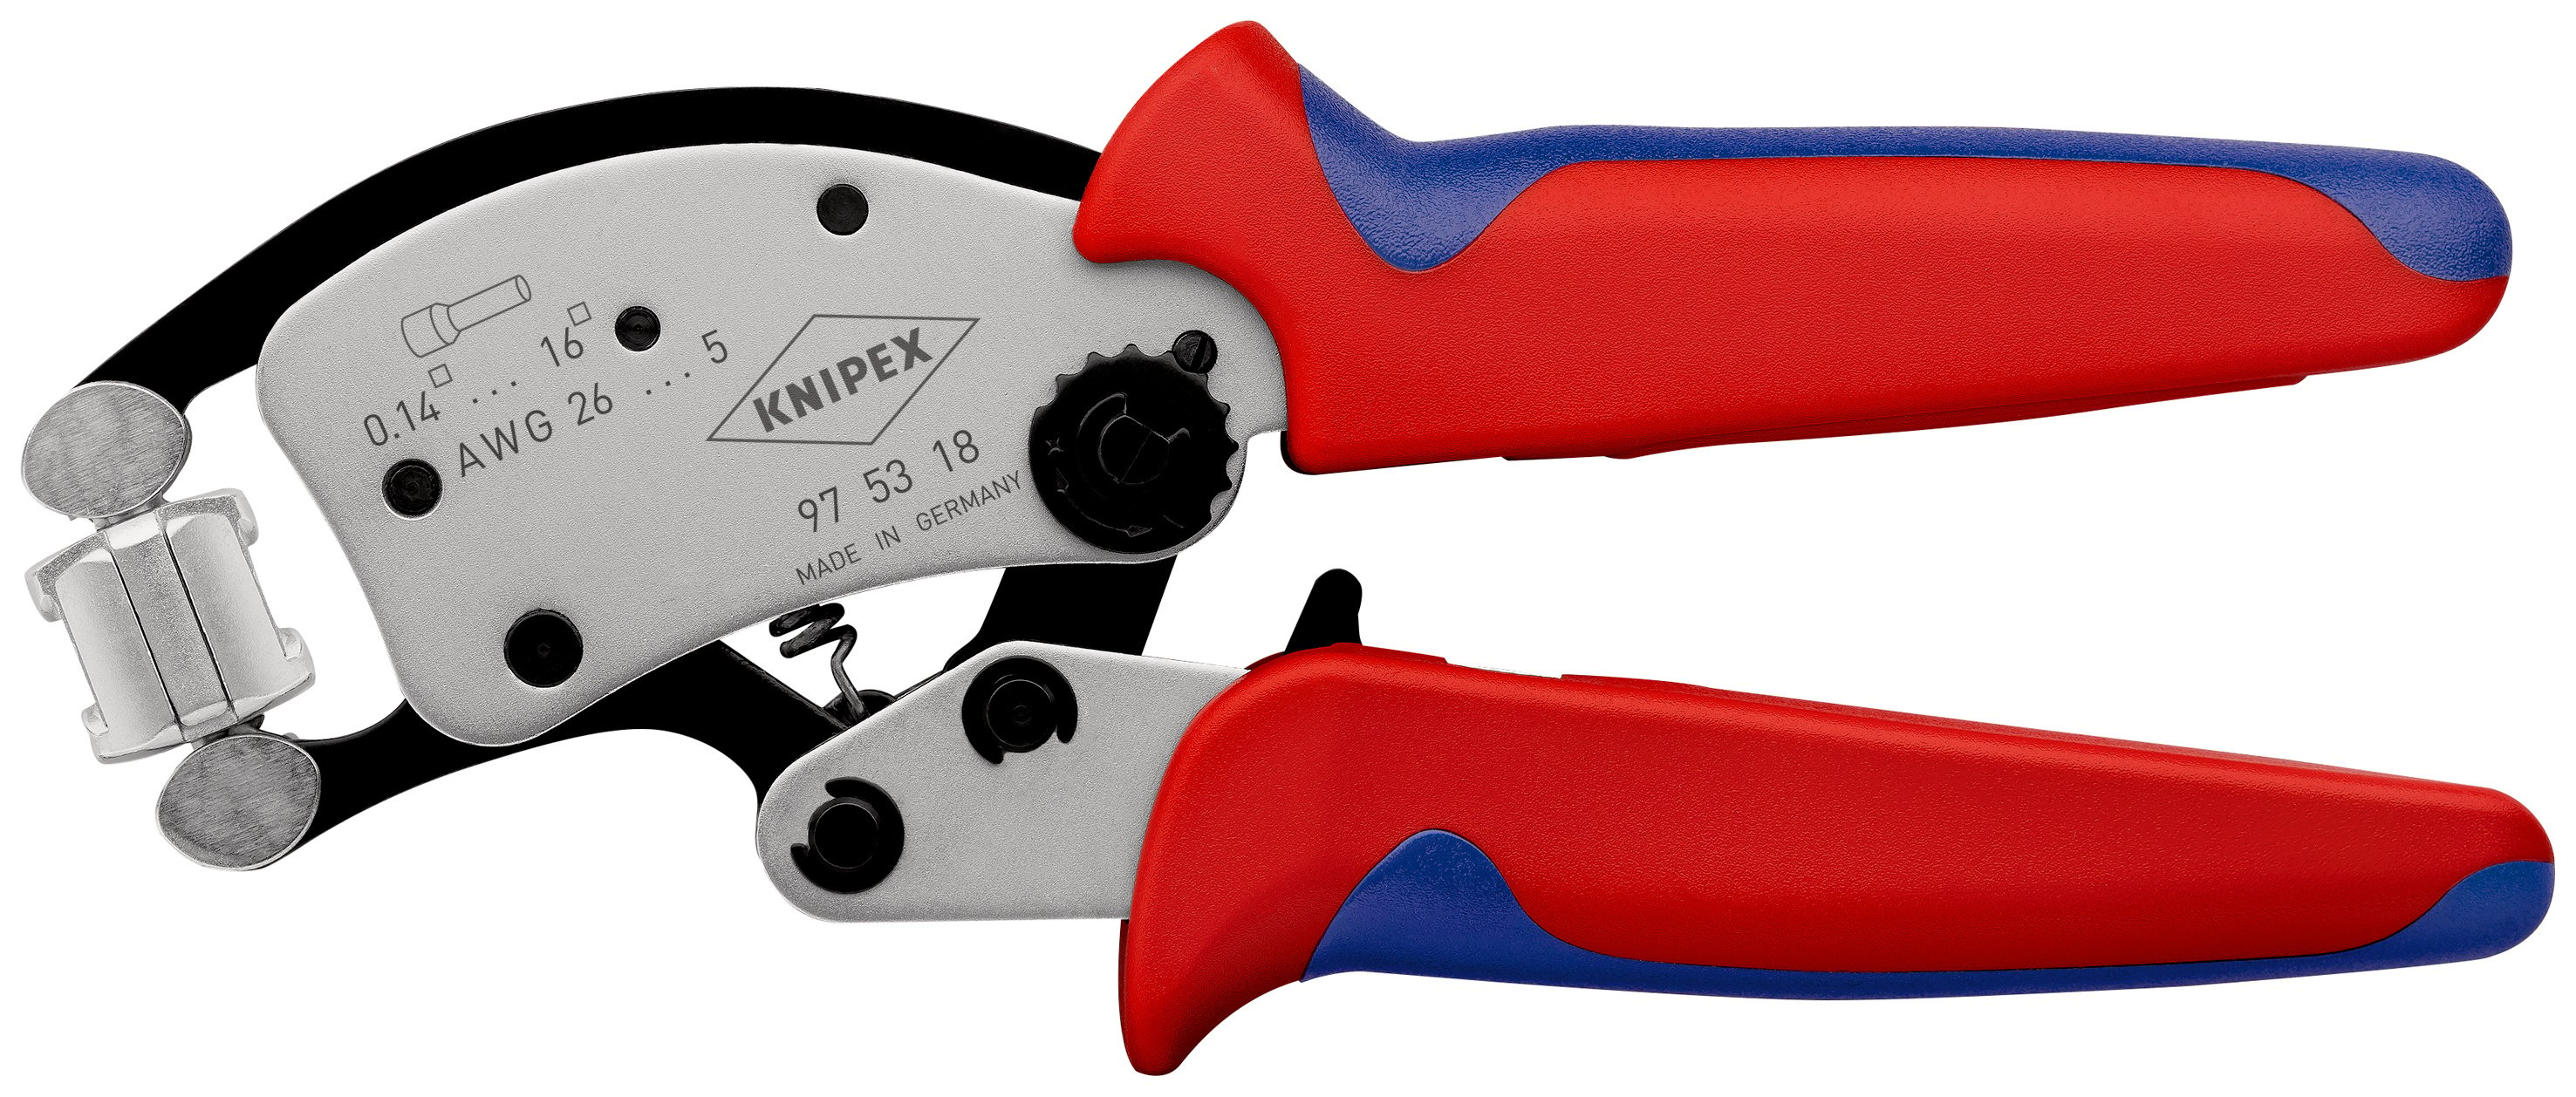 KNIPEX Twistor®16 エンドスリーブ用自動調整圧着プライヤー 回転可能な圧着ヘッド付き | Knipex